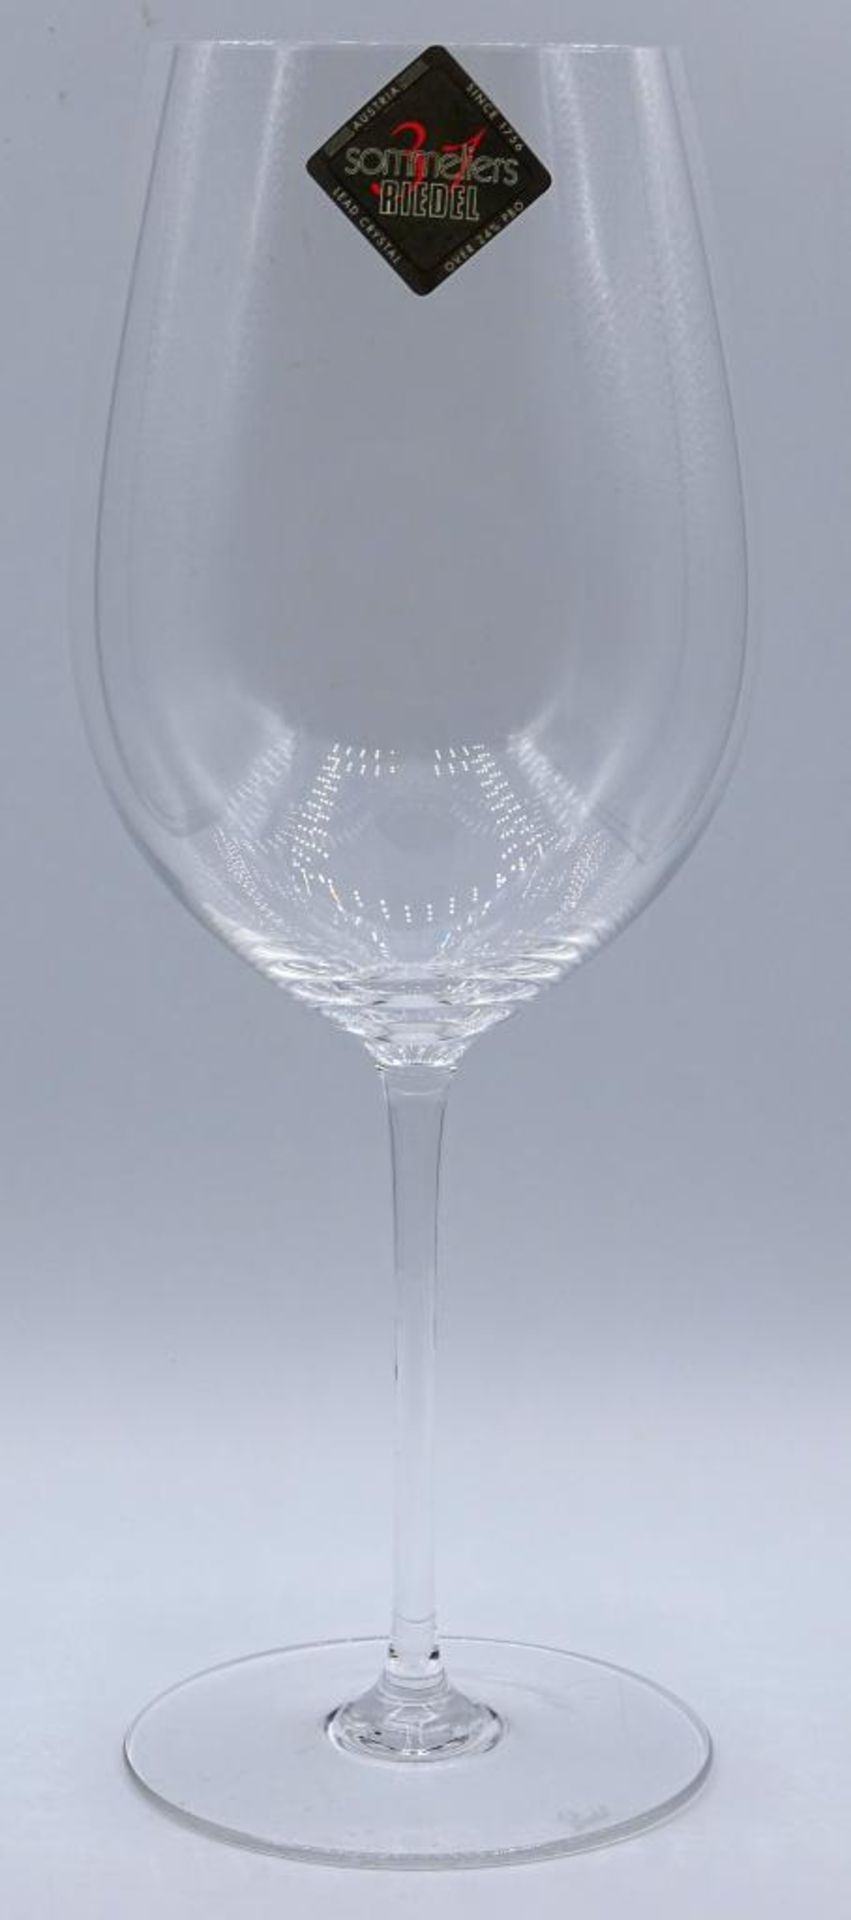 Riedel-Weinglas Serie Sommelier Grand Cru, neu im Karton, - Bild 4 aus 7